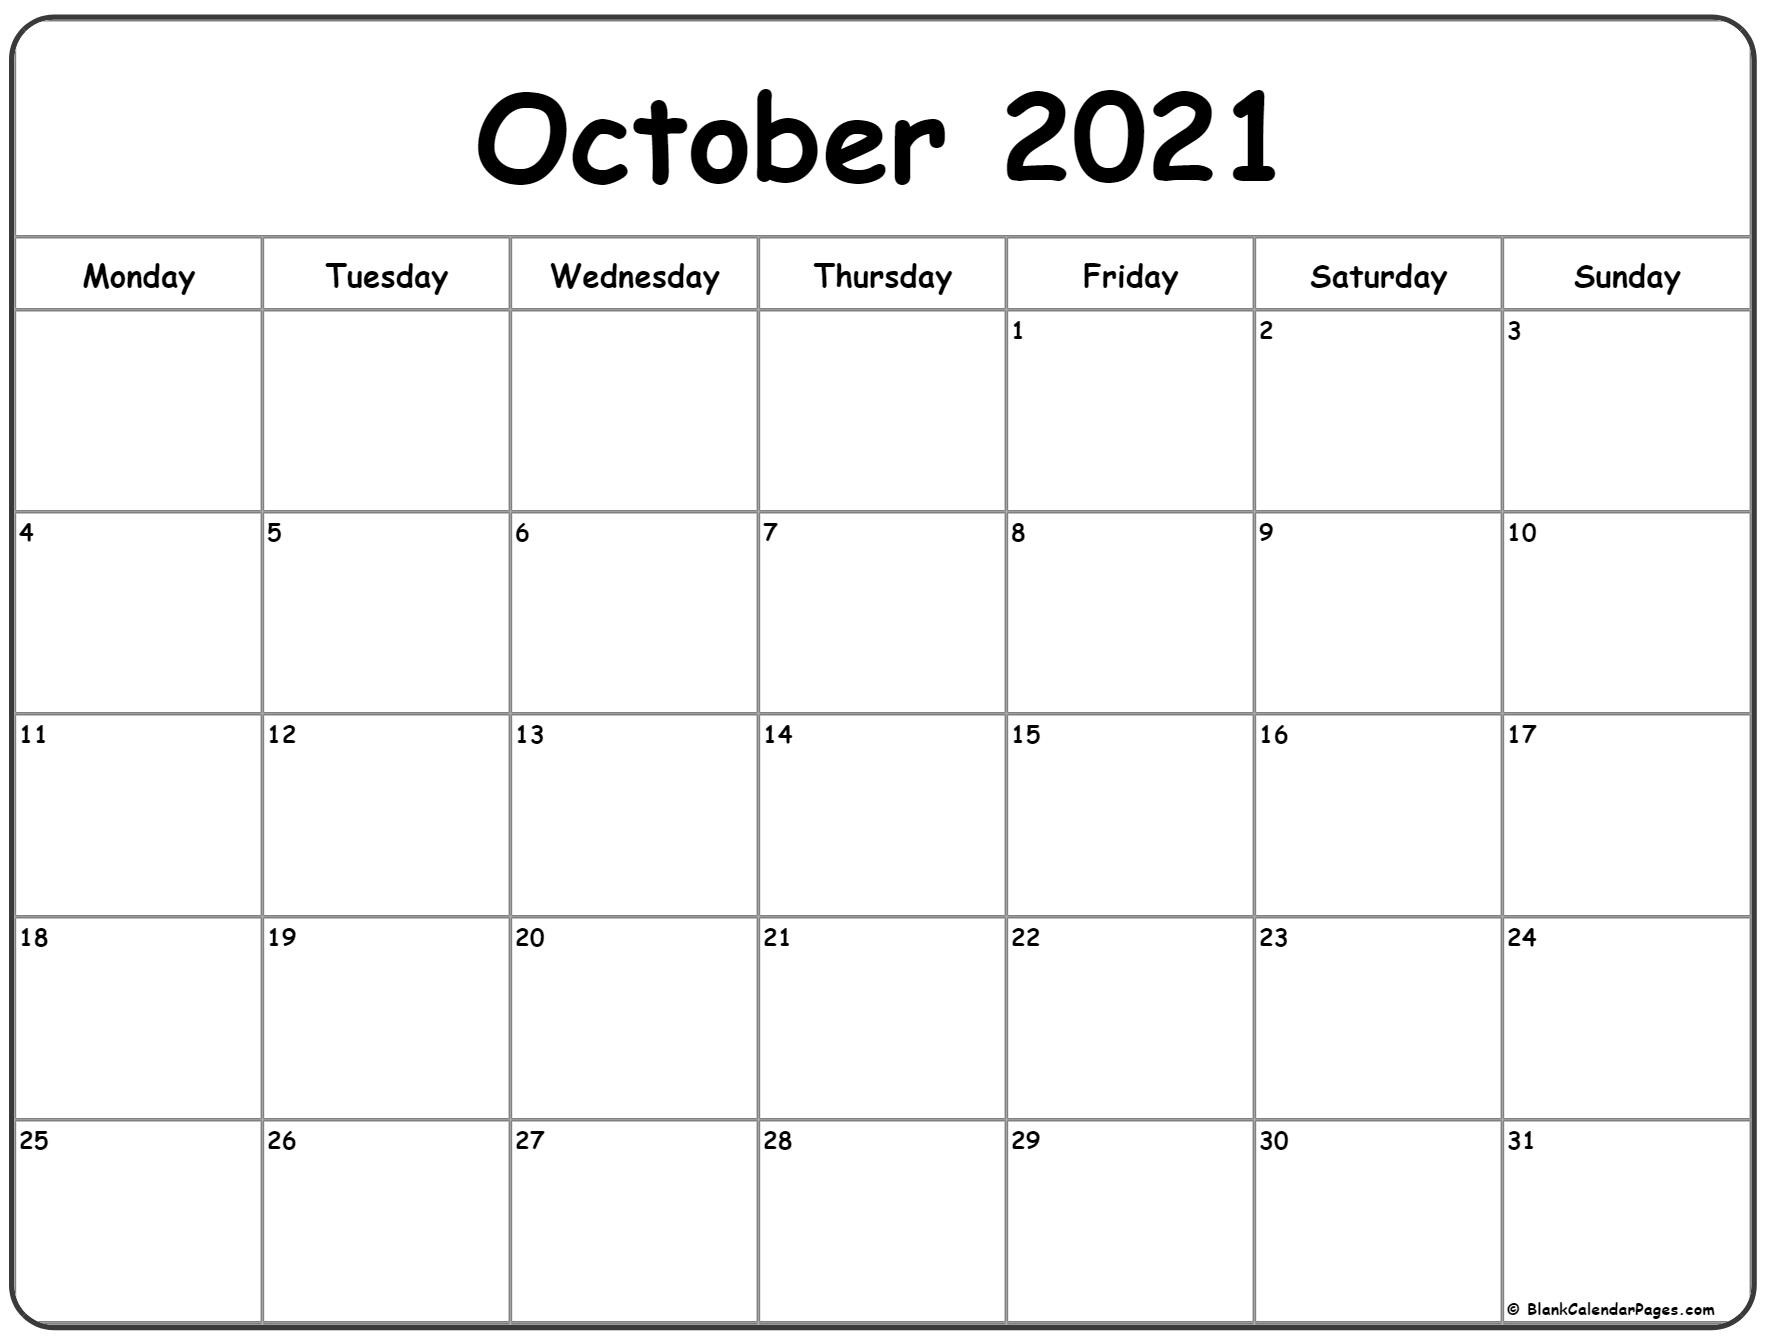 October 2021 Monday Calendar | Monday To Sunday-October 2021 Calendar